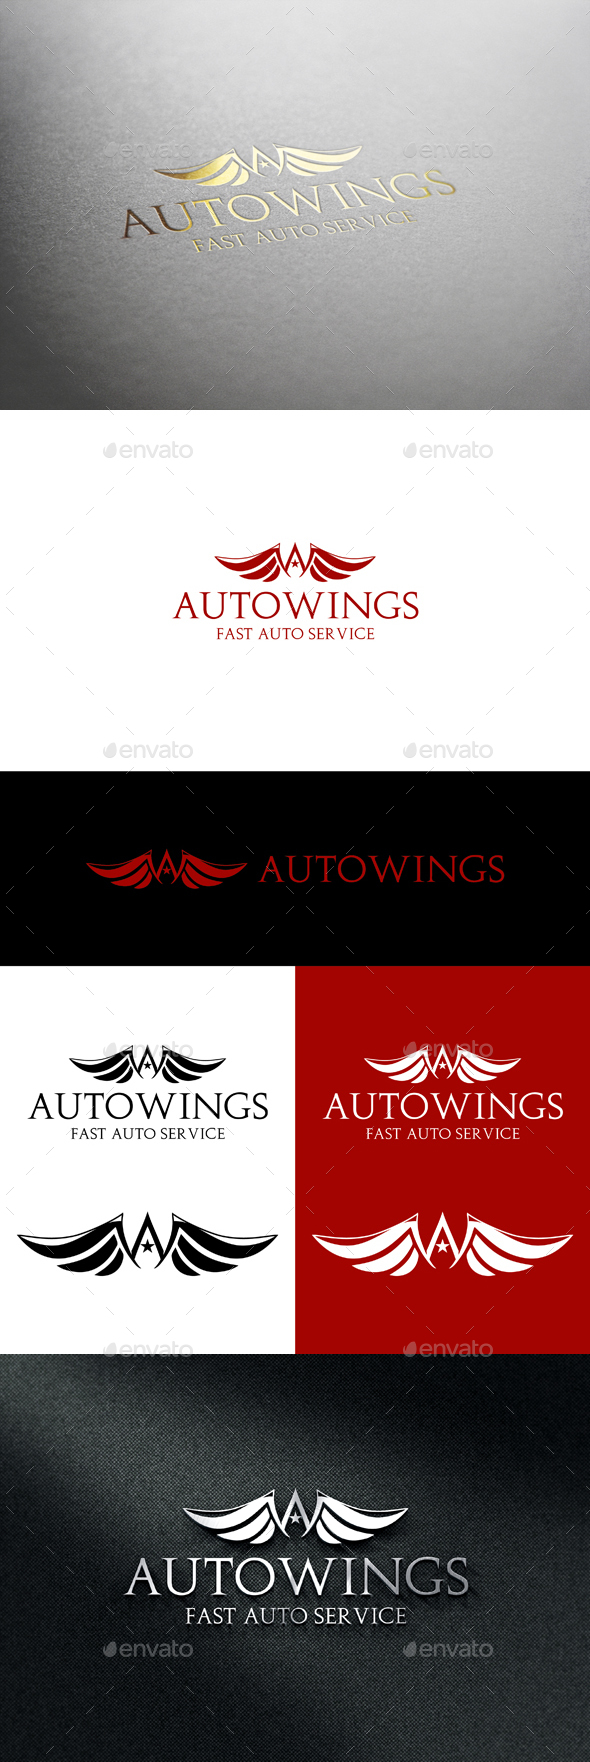 Auto Wings_v2